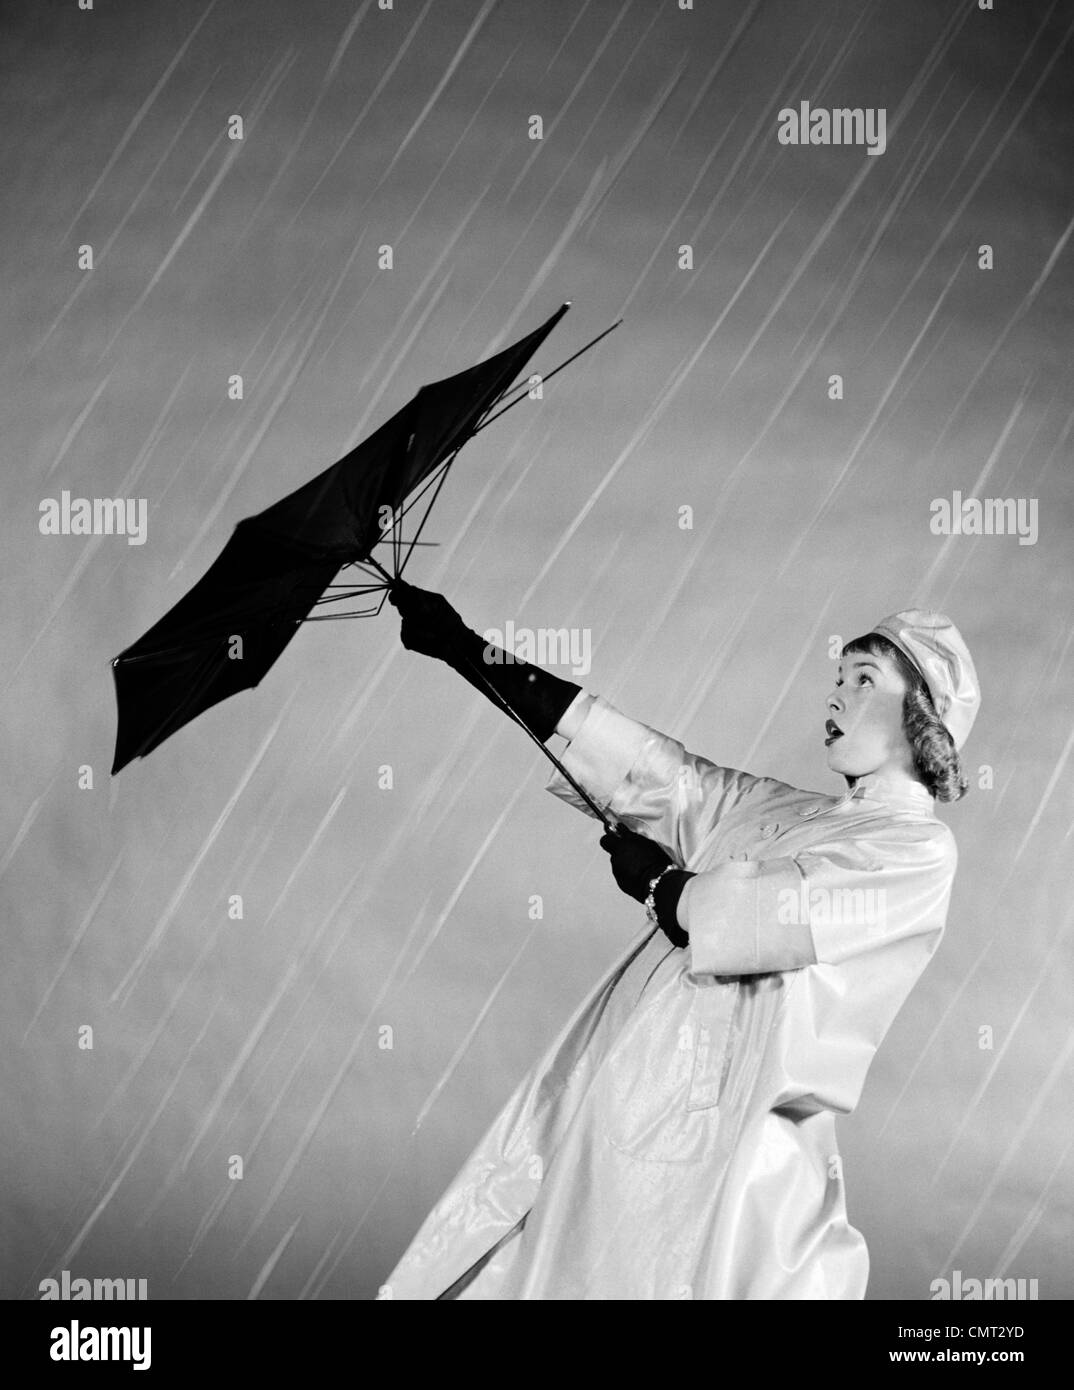 Ahomy Double Protection Contre Le Vent et la Pluie Parapluie inversé de Voiture avec poignée en Forme de C Parapluie inversé Tête de Mort Noire et Blanche 